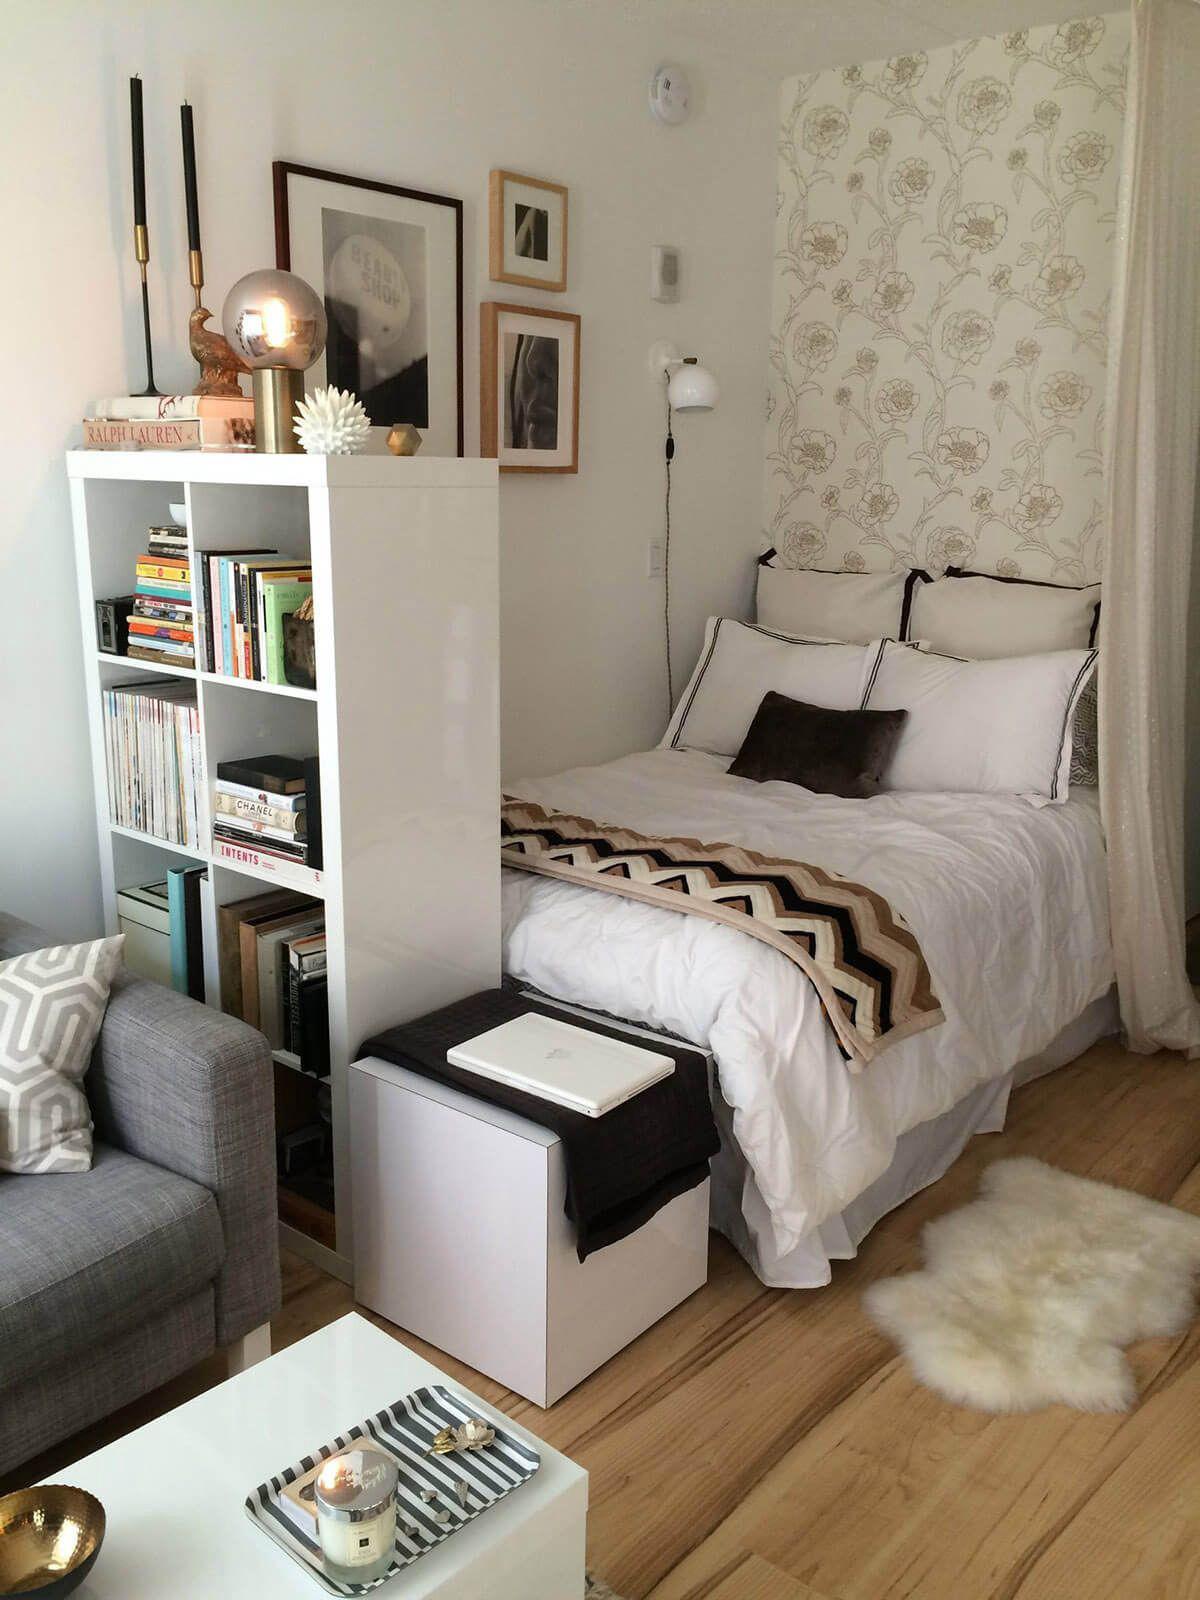 10 Small Bedroom Organization Ideas